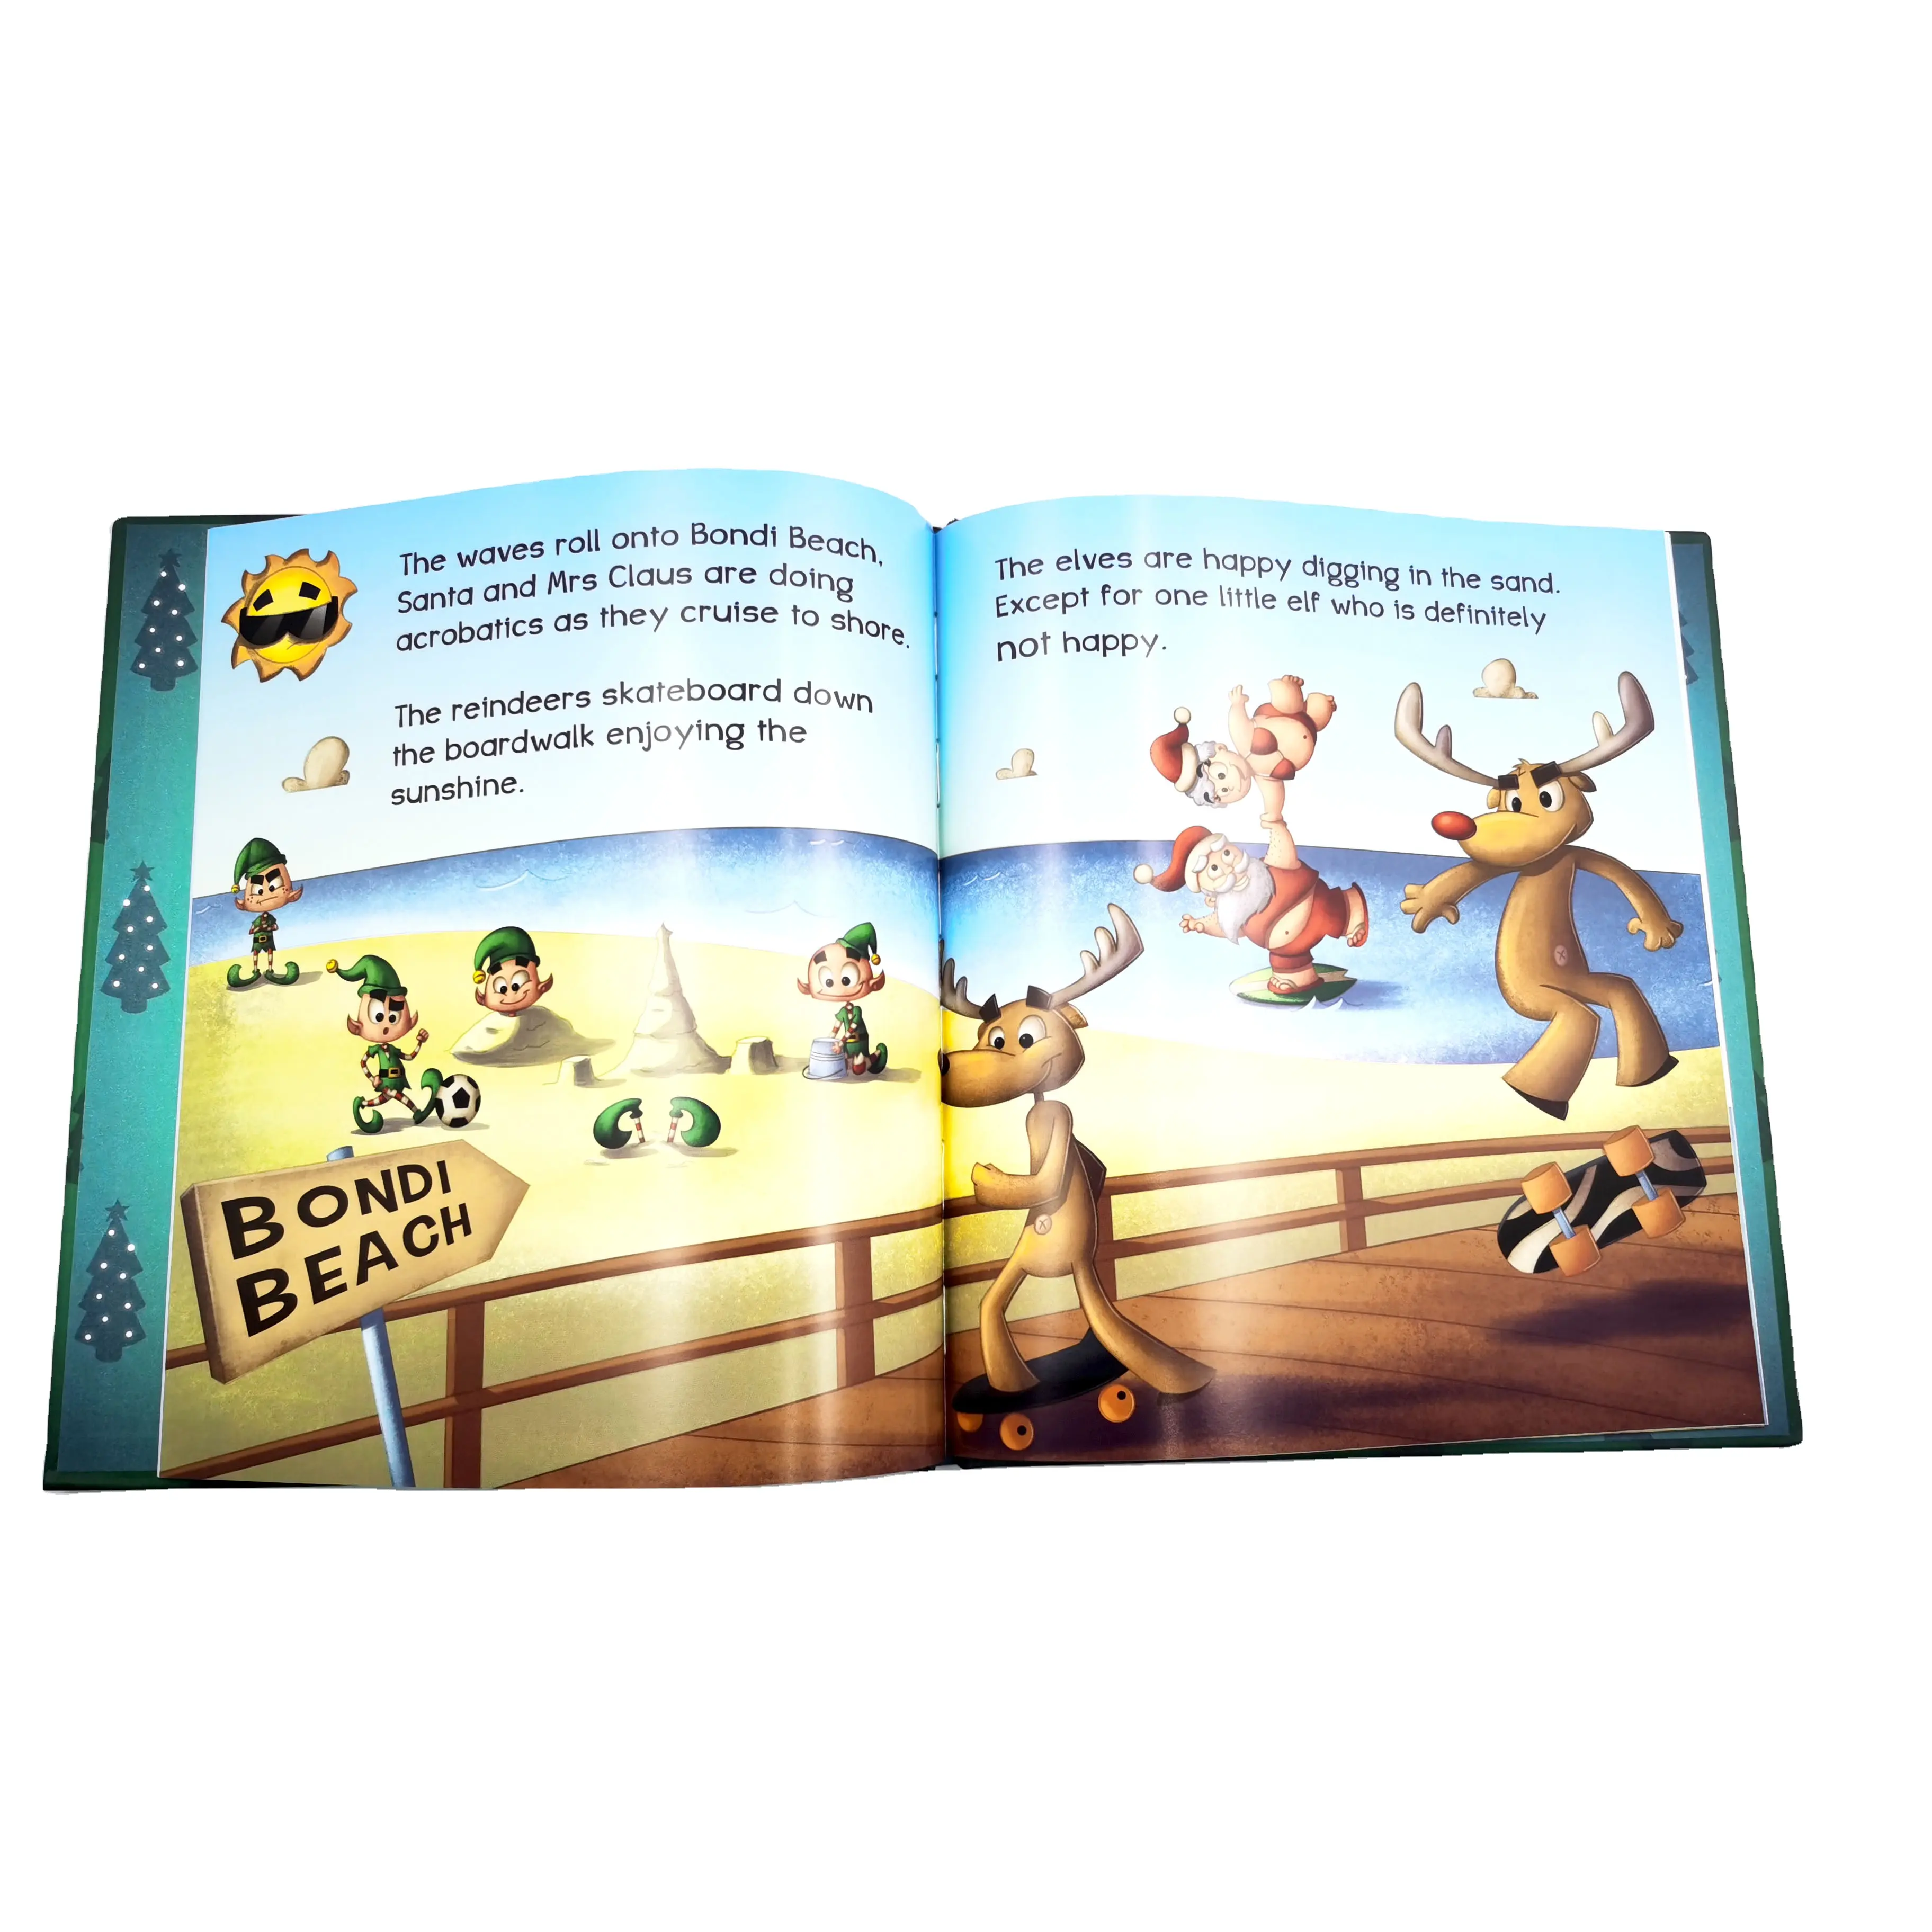 Yüksek kalite özel boyama çocuk kitabı ucuz fiyat İngilizce öğrenme gerçek görüntü dokular fantezi kağıt